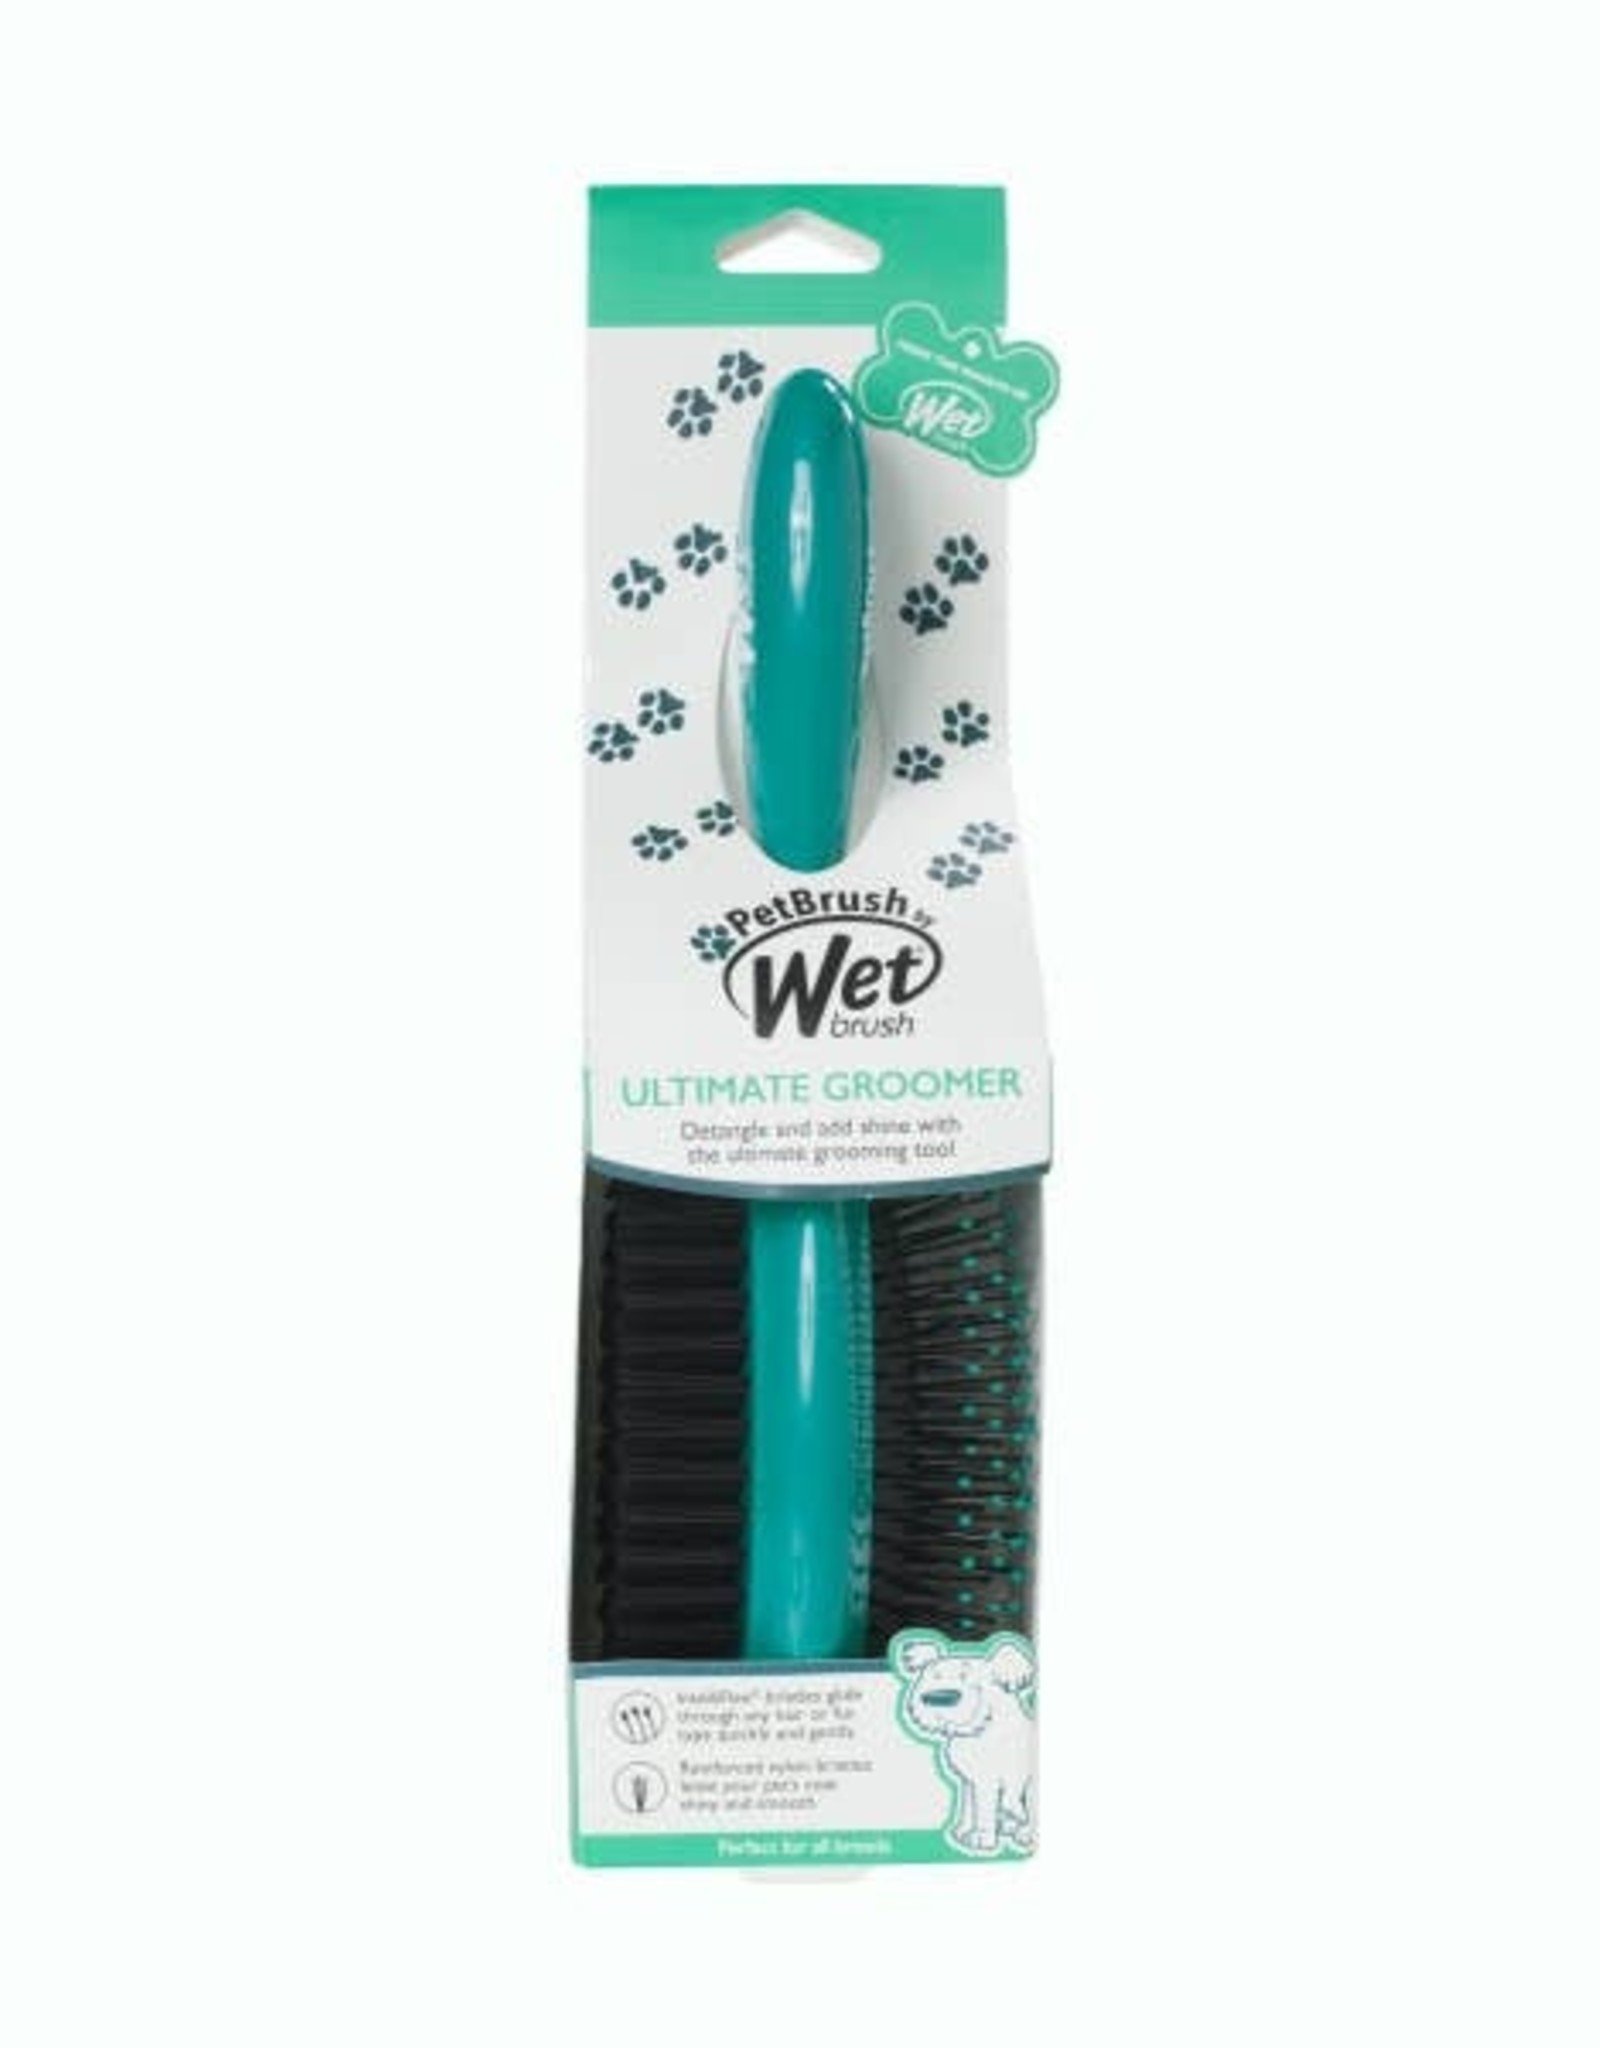 WetBrush Pet Brush Ultimate Groomer 2-in-1 Detangler